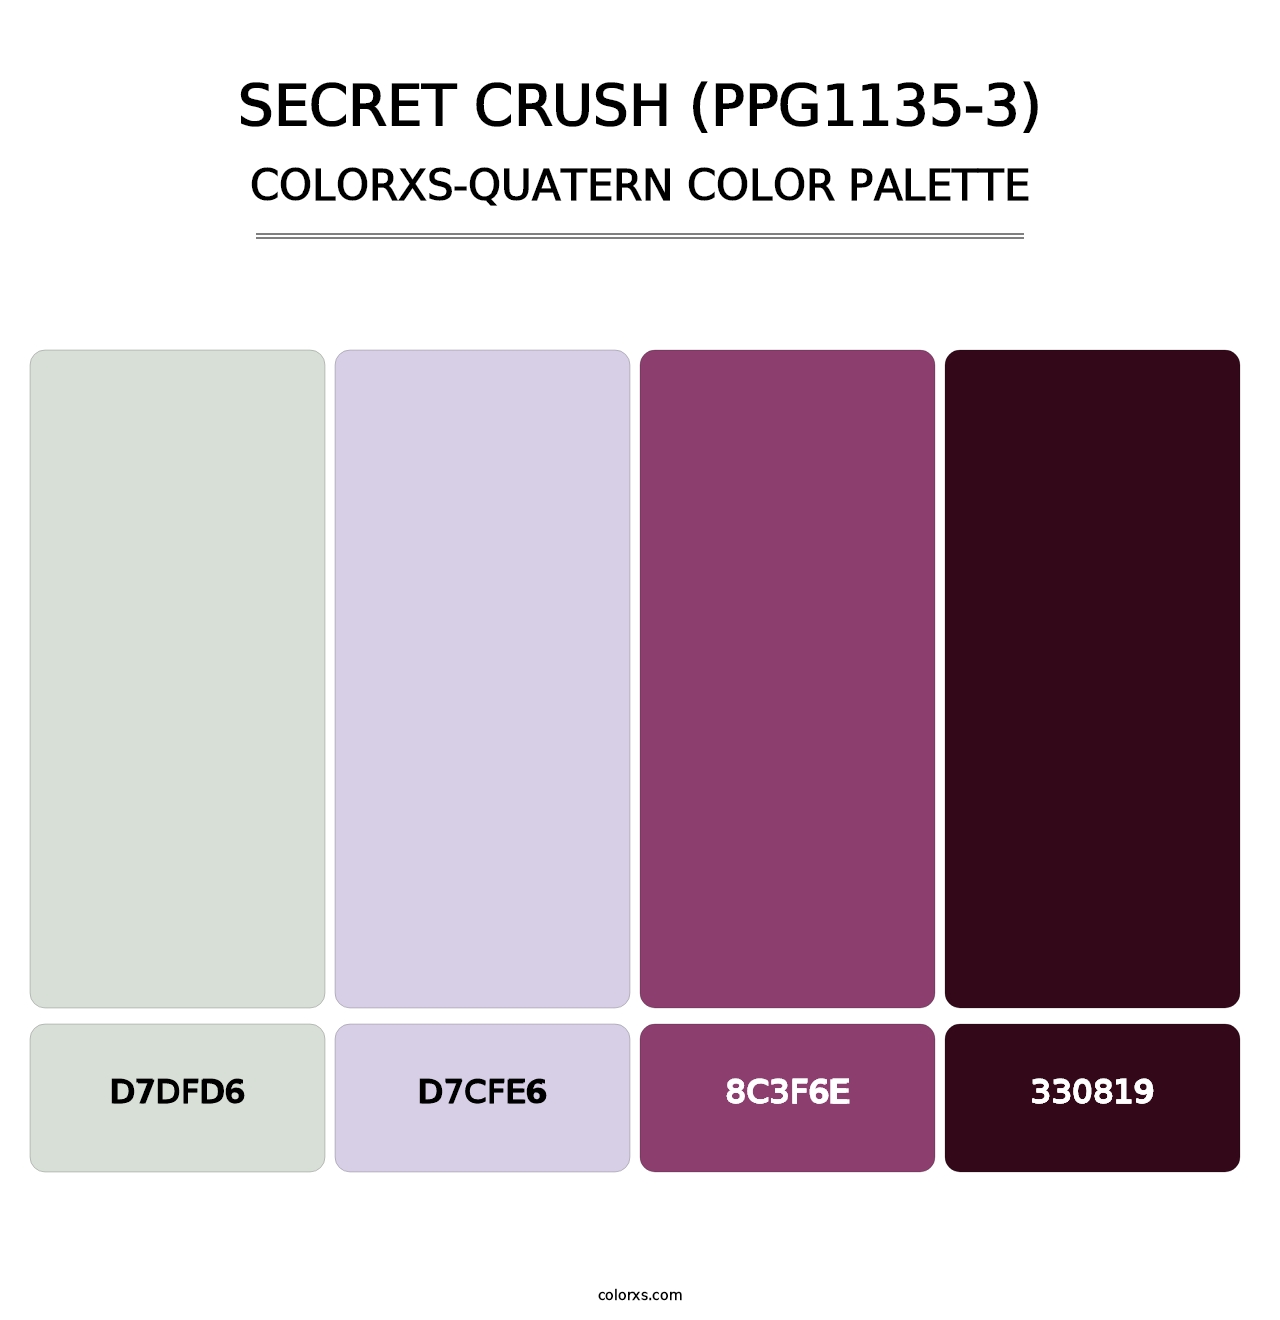 Secret Crush (PPG1135-3) - Colorxs Quatern Palette